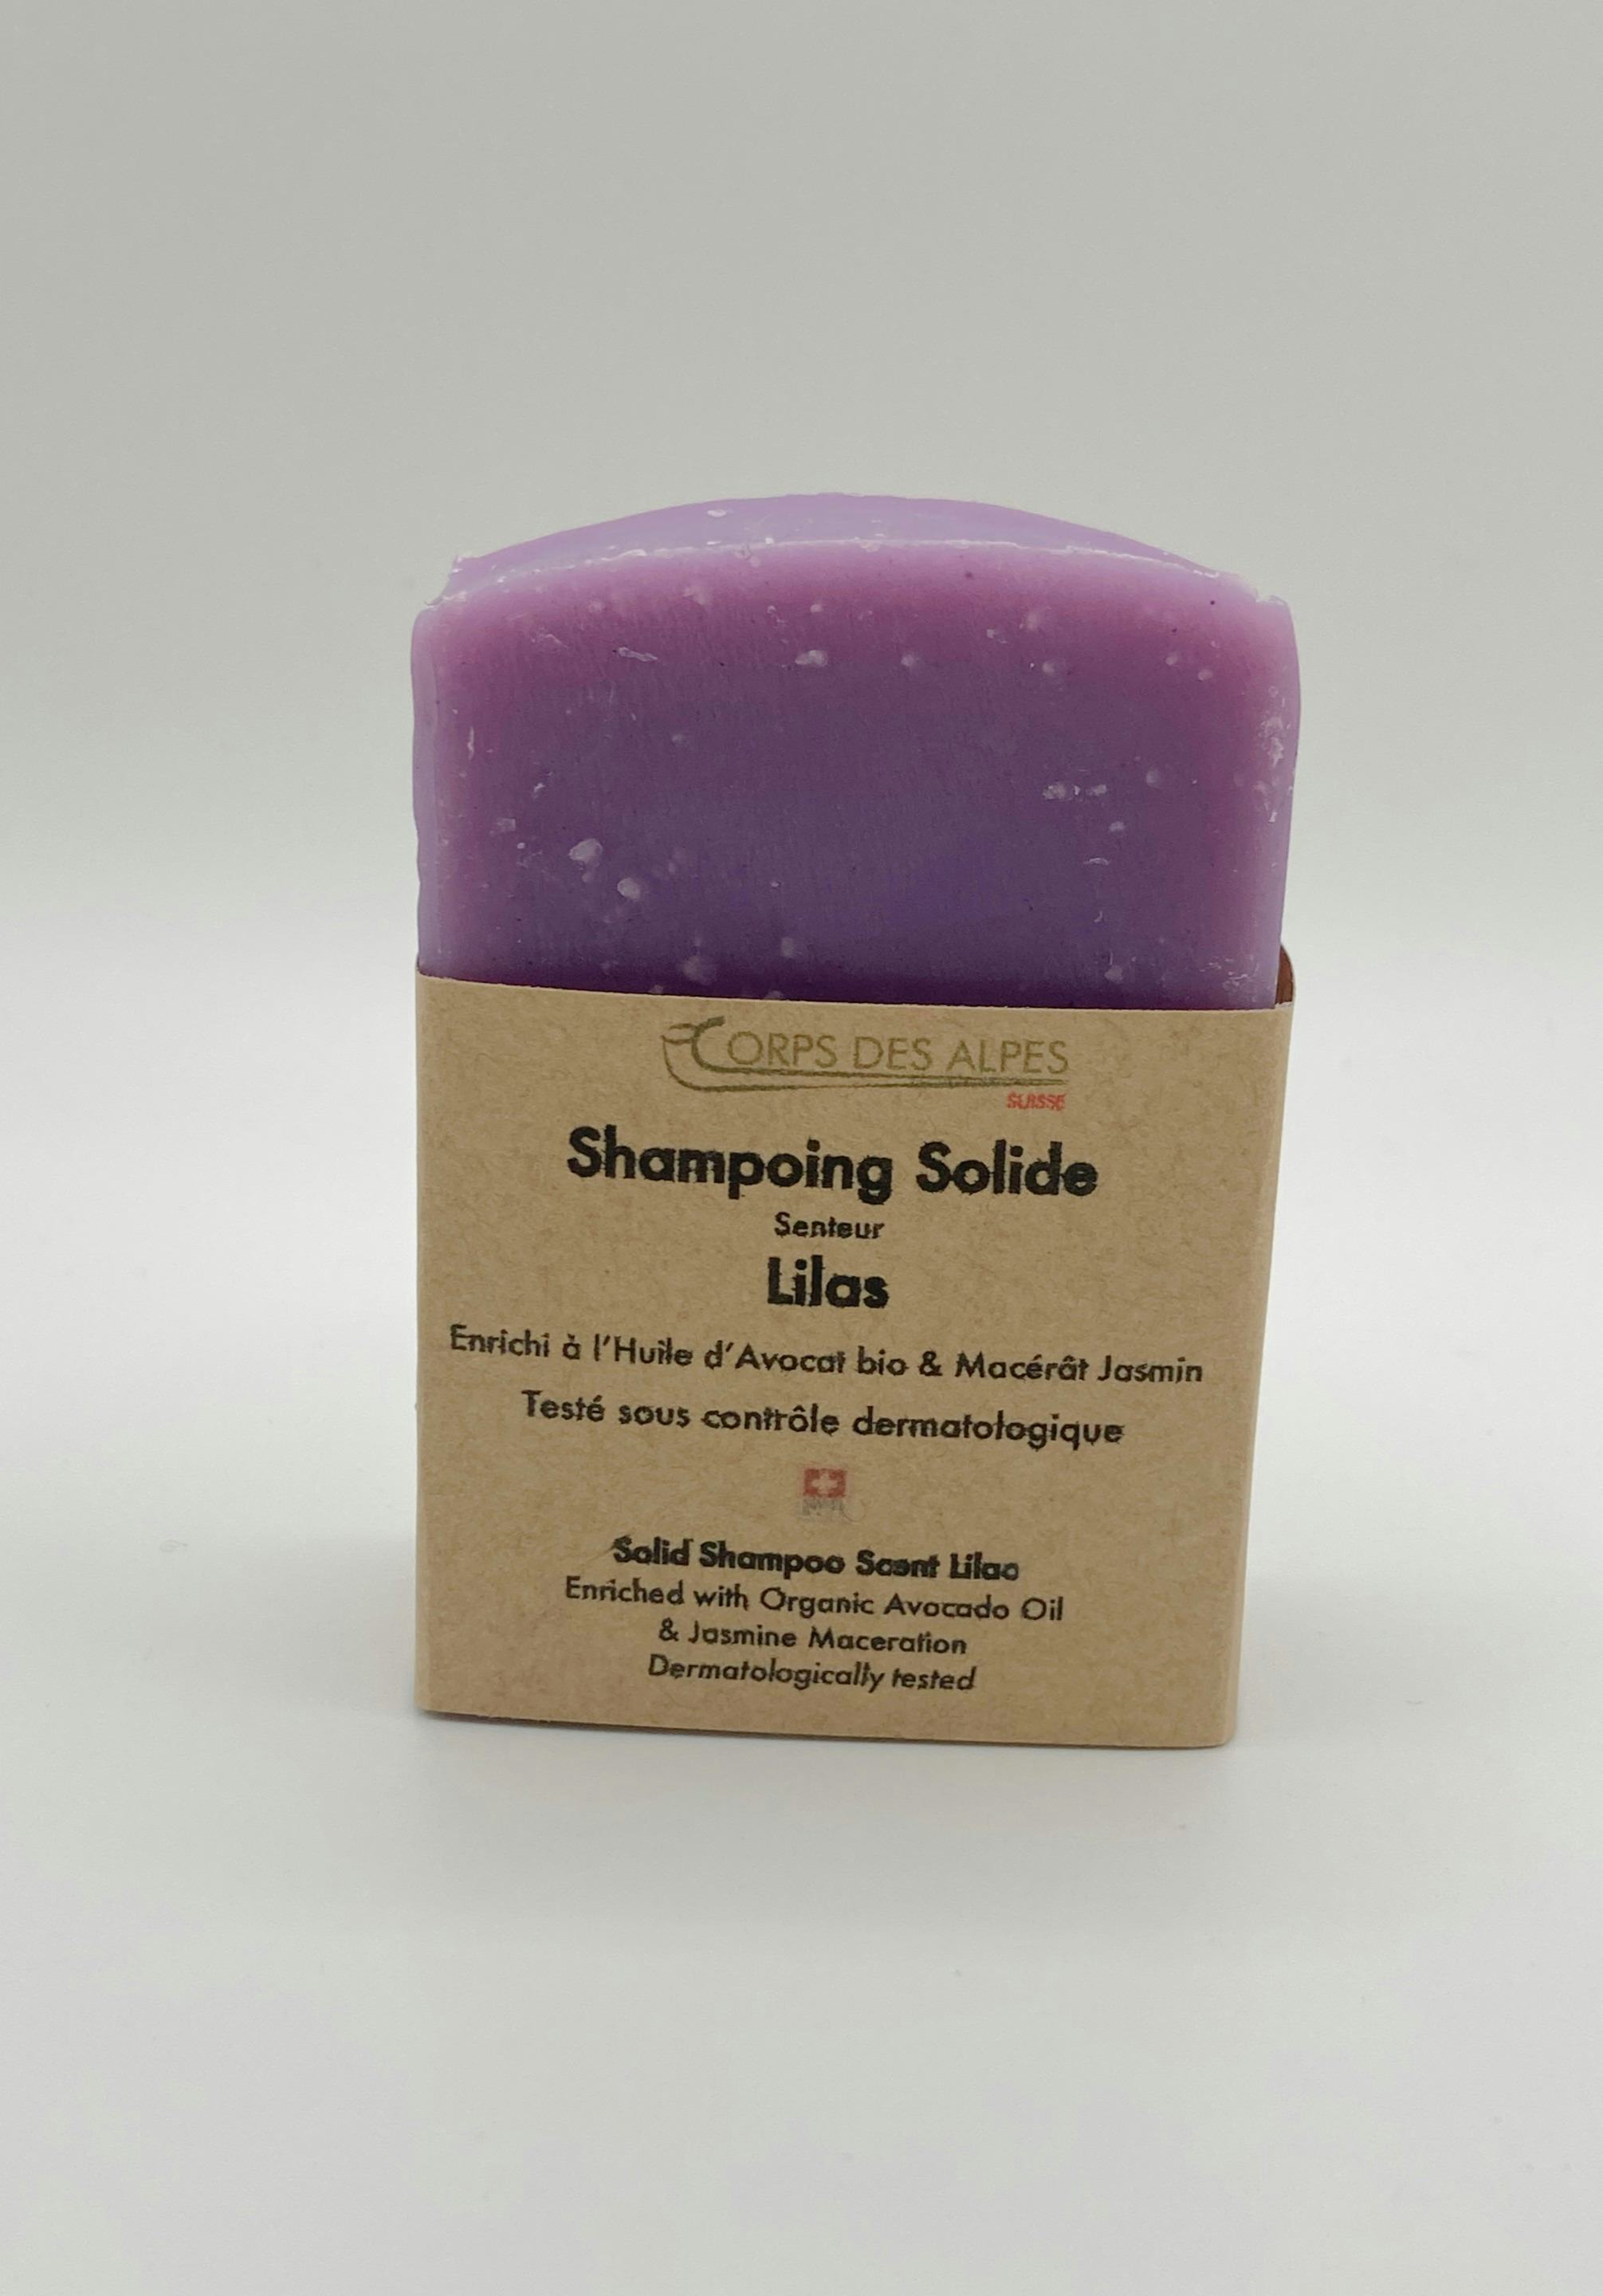 Shampoing solide senteur Lilas, prodotto artigianale per la vendita diretta in Svizzera